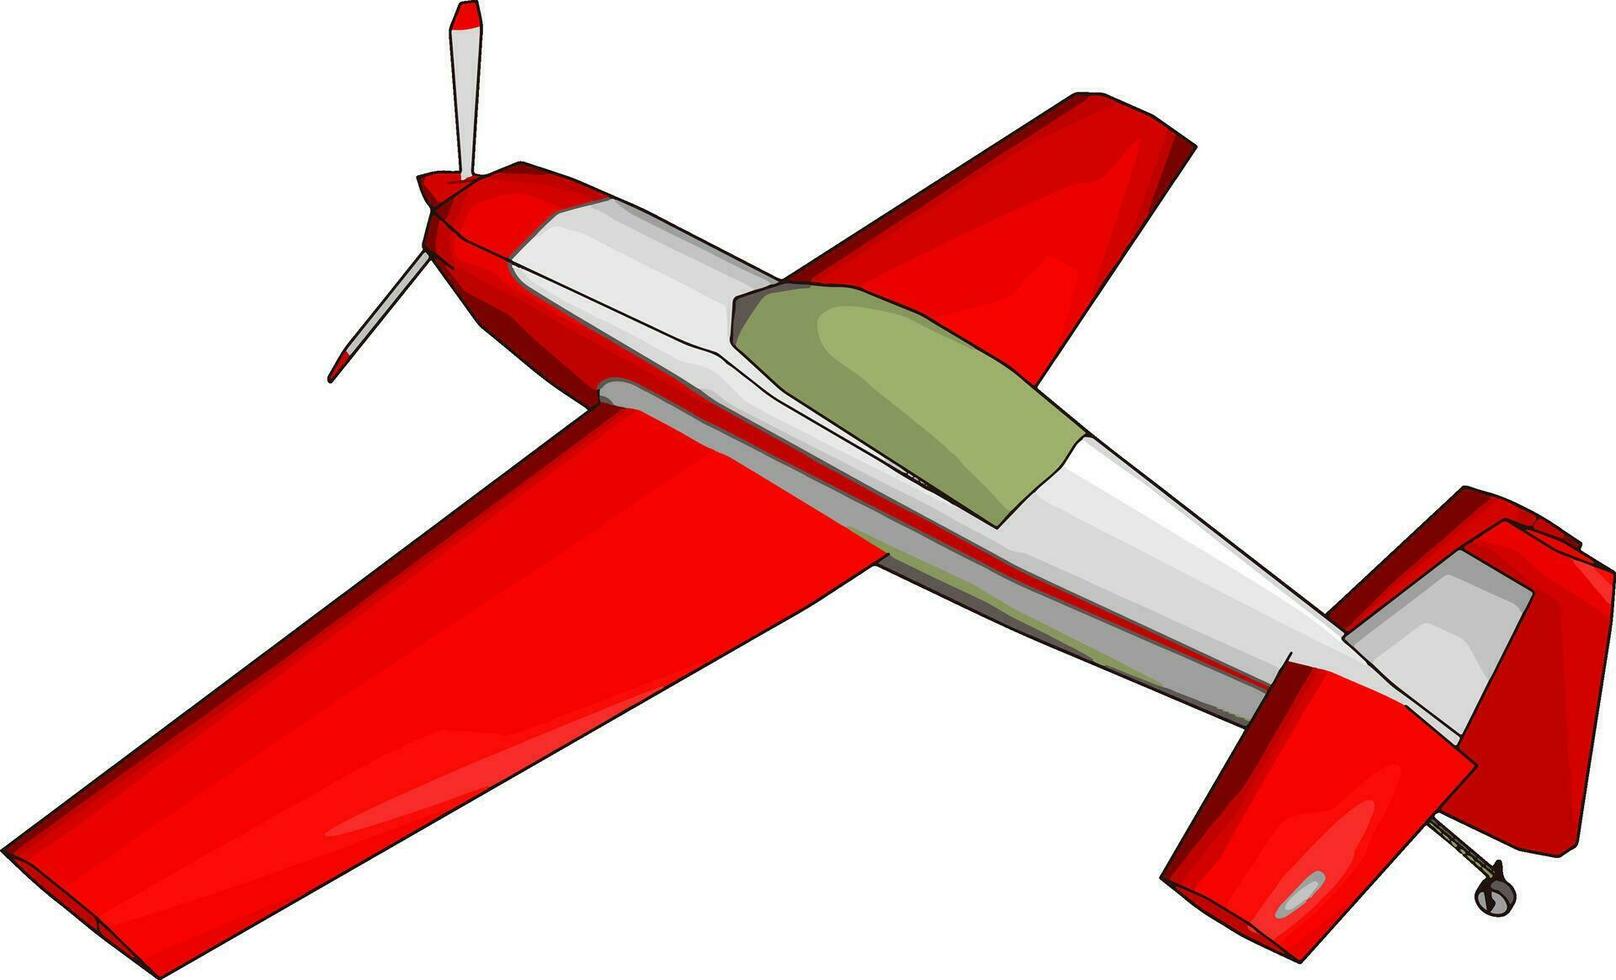 planador vermelho, ilustração, vetor em fundo branco.